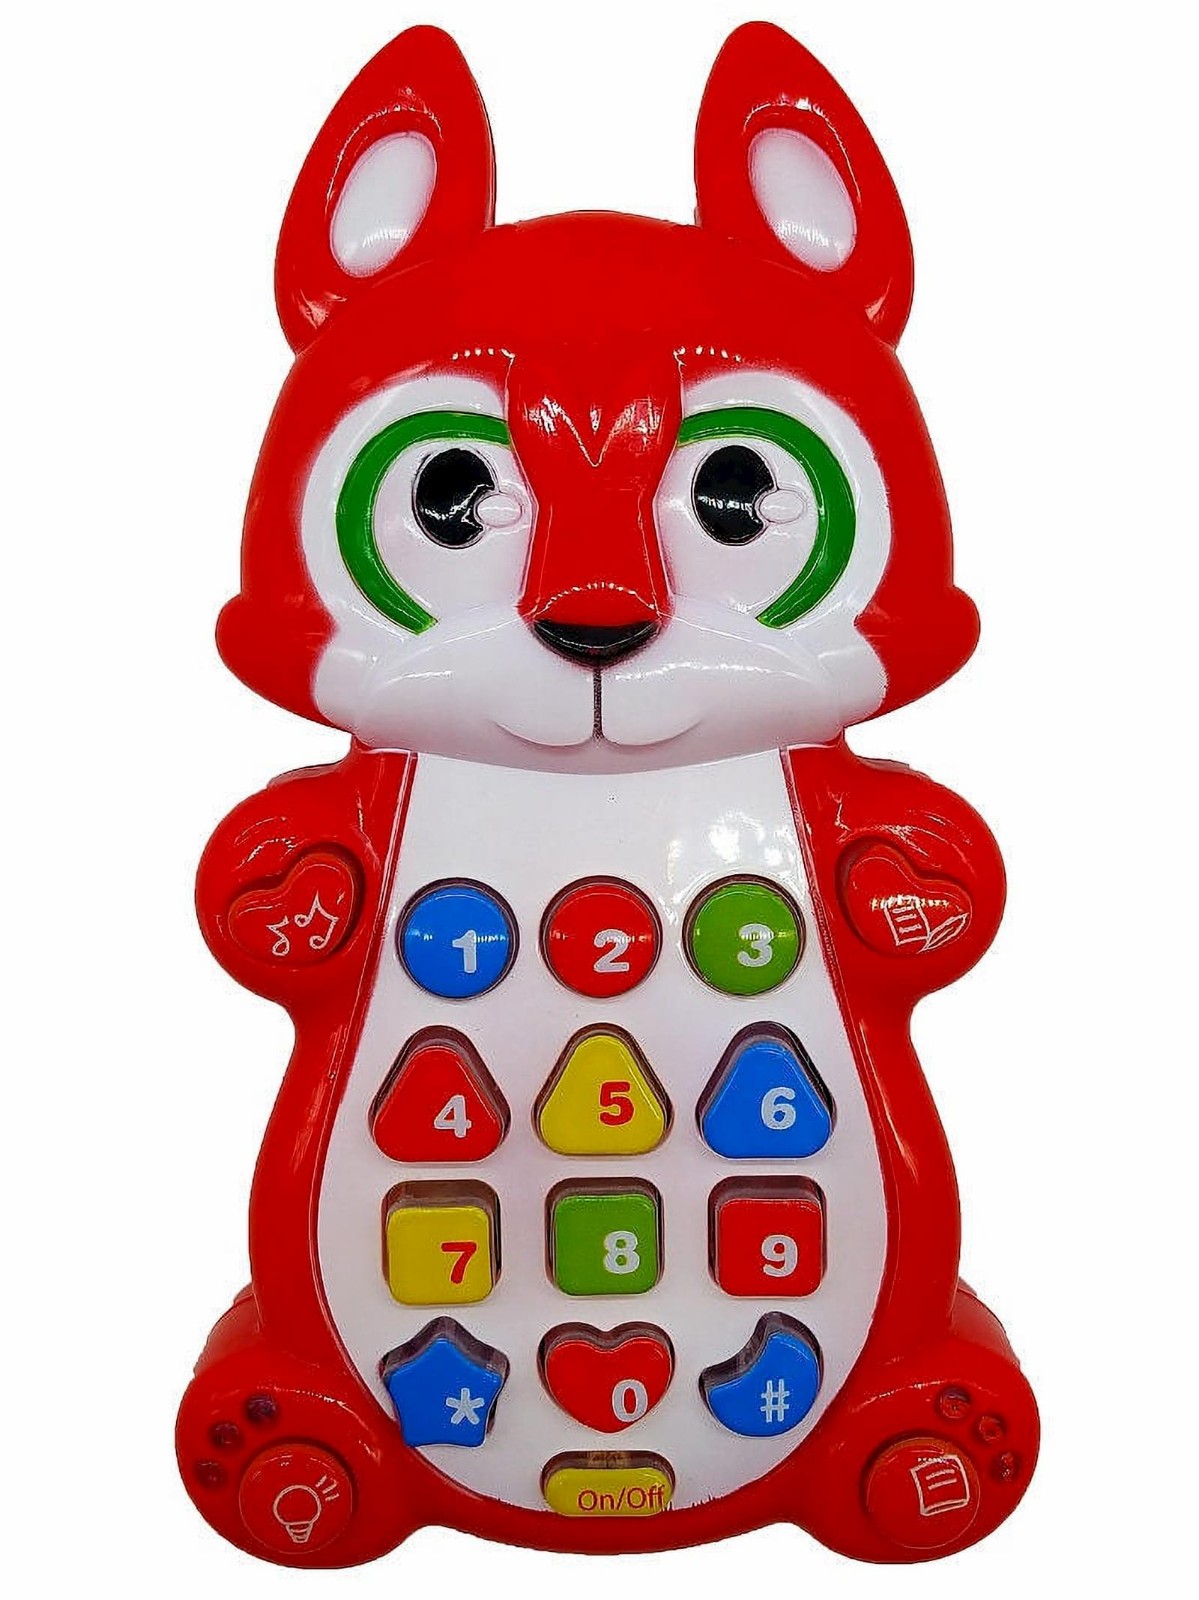 Обучающий детский планшет Play Smart «Умный смартфон» 7614 с цветной проекцией / Микс